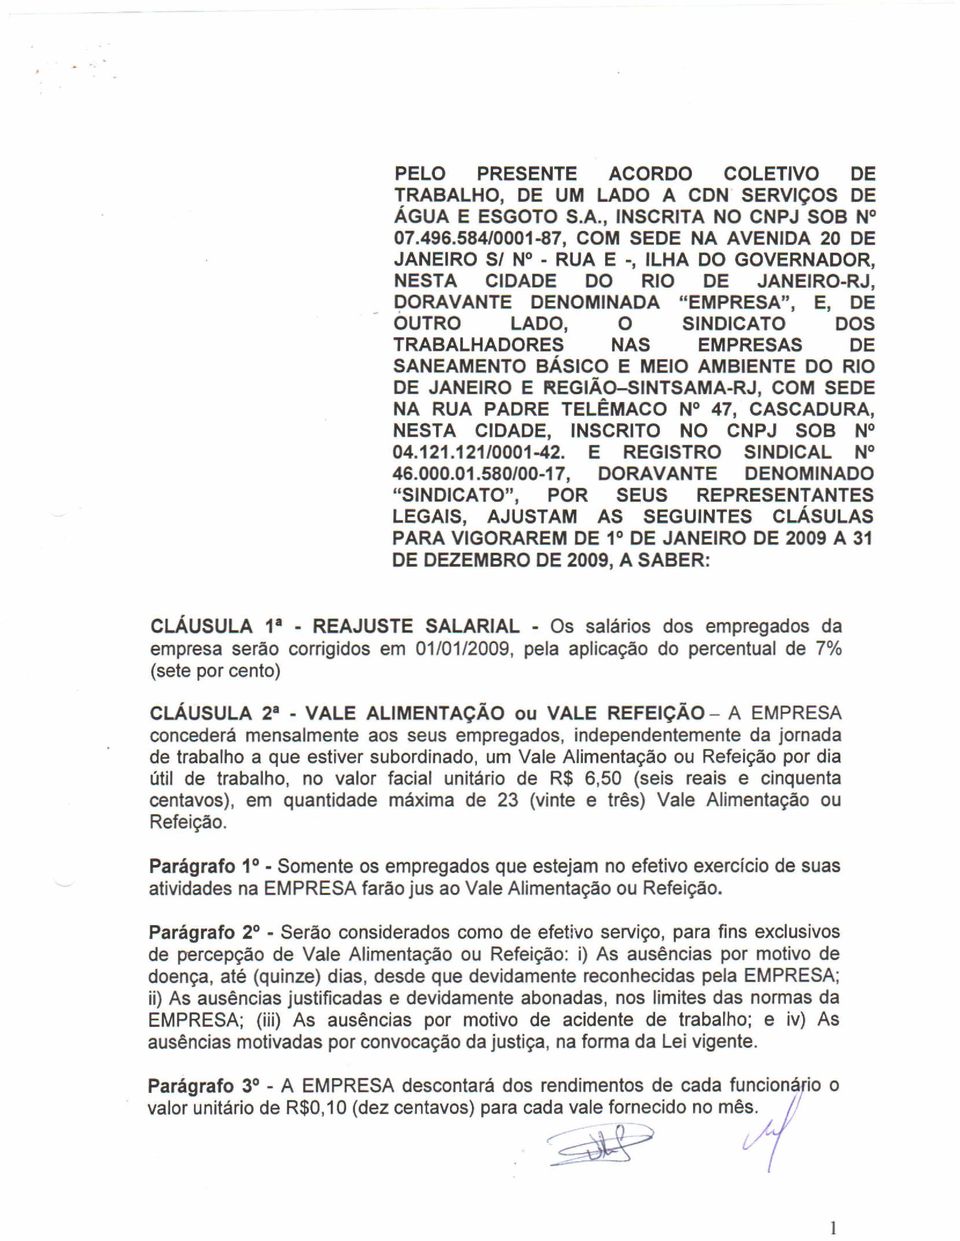 JANEIRO E REGIÃO-SINTSAMA-RJ, COM SEDE NA RUA PADRE TELÊMACO N 47, CASCADURA, NESTA CIDADE, INSCRITO NO CNPJ SOB N 04.121.121/0001-